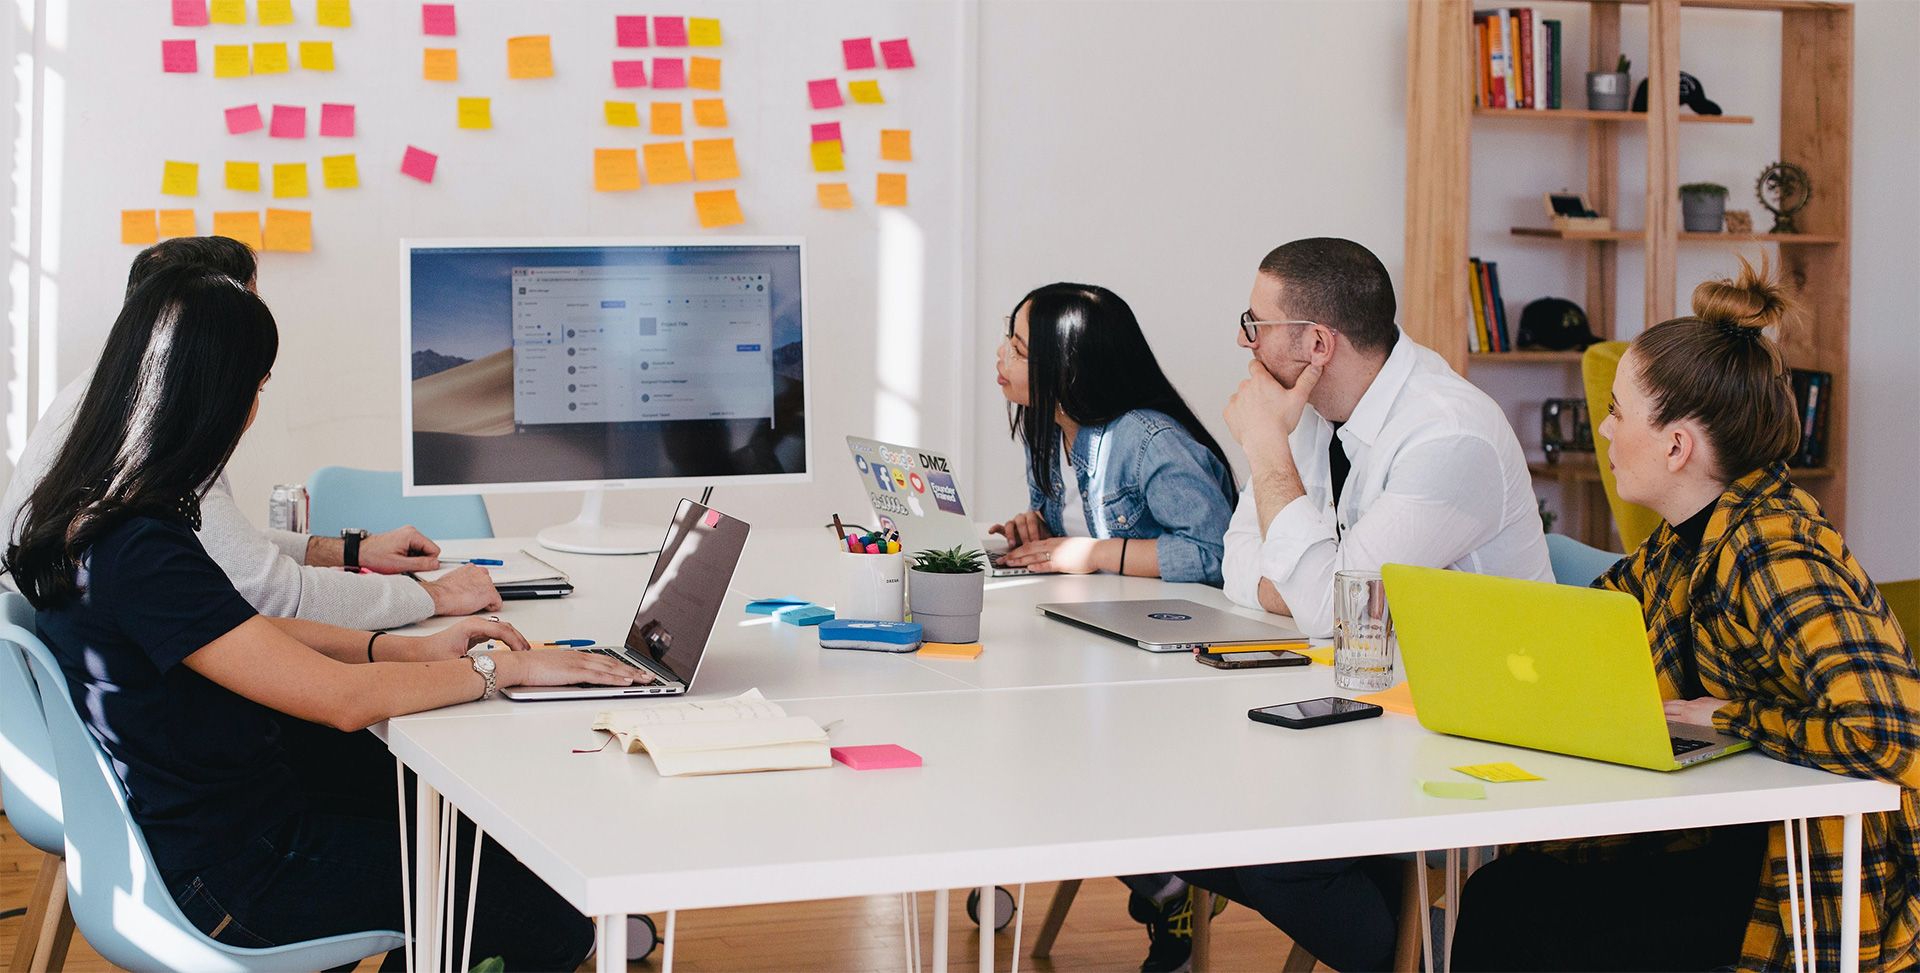 Team von Marketingexperten analysiert SEO-Strategien auf einem Monitor in einem hellen Büro.